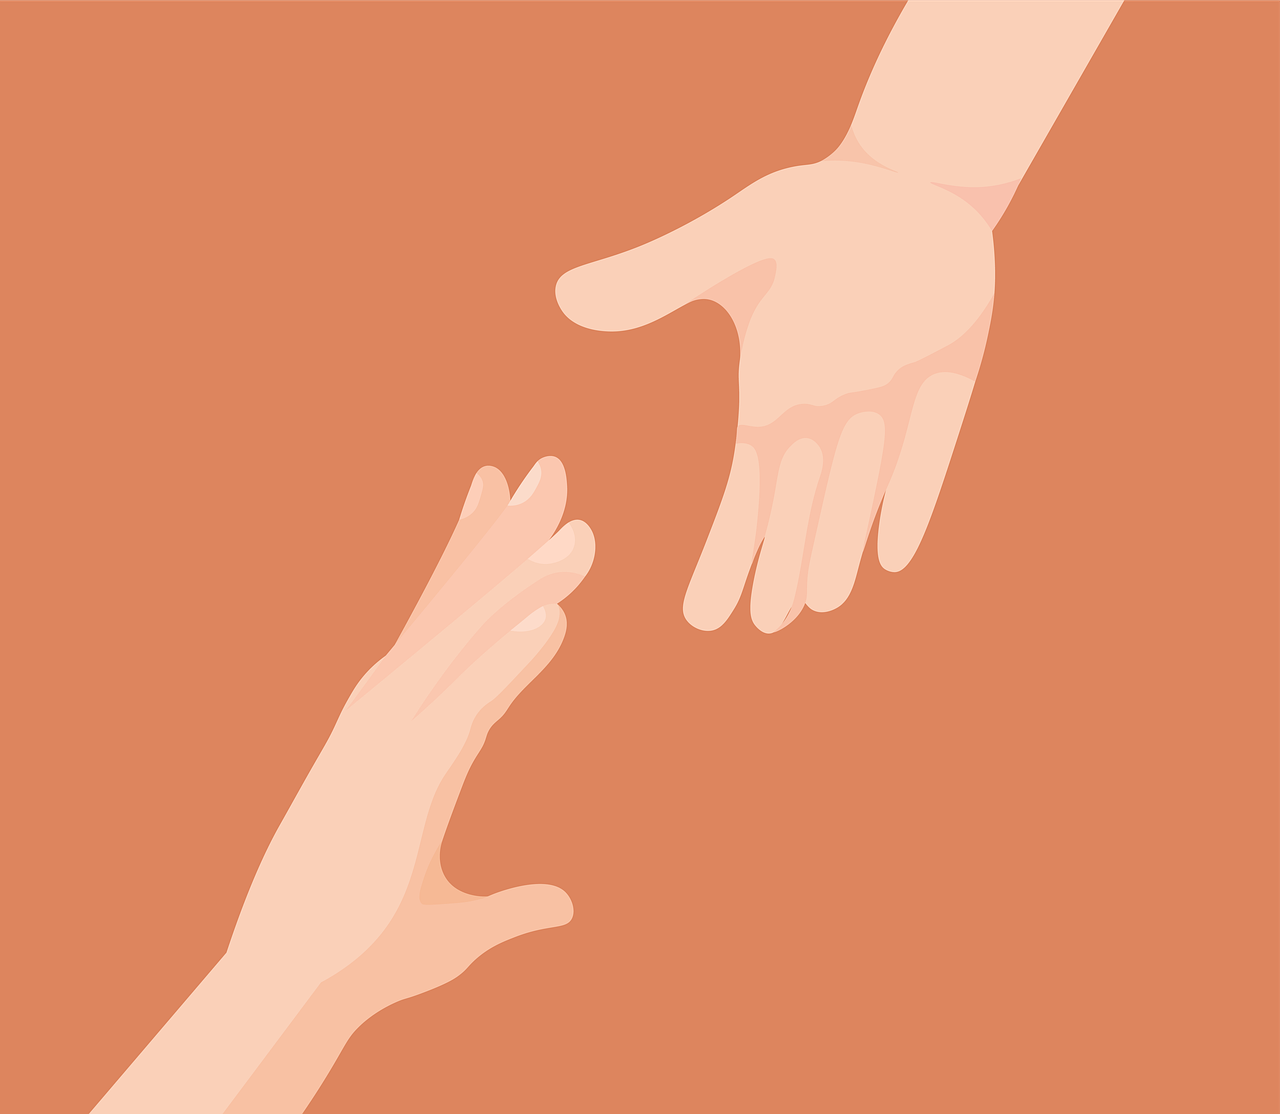 Illustratie van twee handen die naar elkaar reiken tegen een zachtroodbruin gekleurde achtergrond